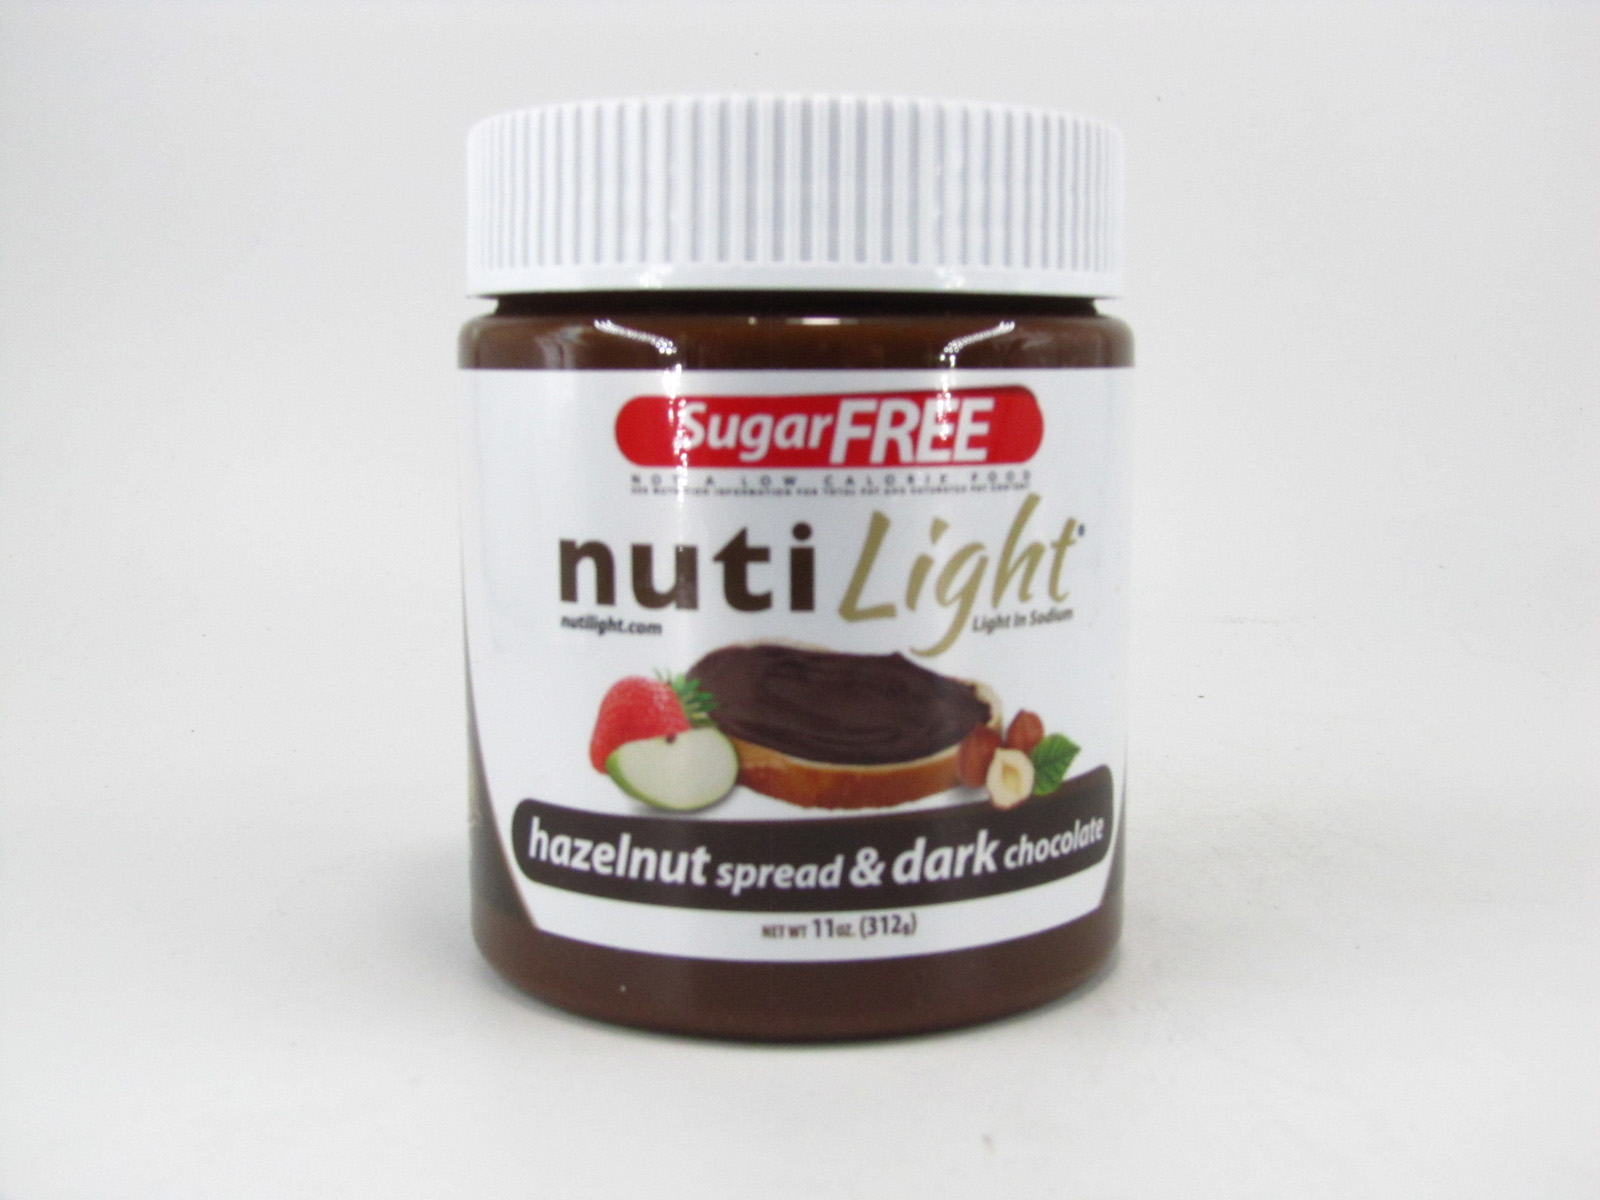 Nuti light - Hazelnut Spread & Dark Chocolate - front view